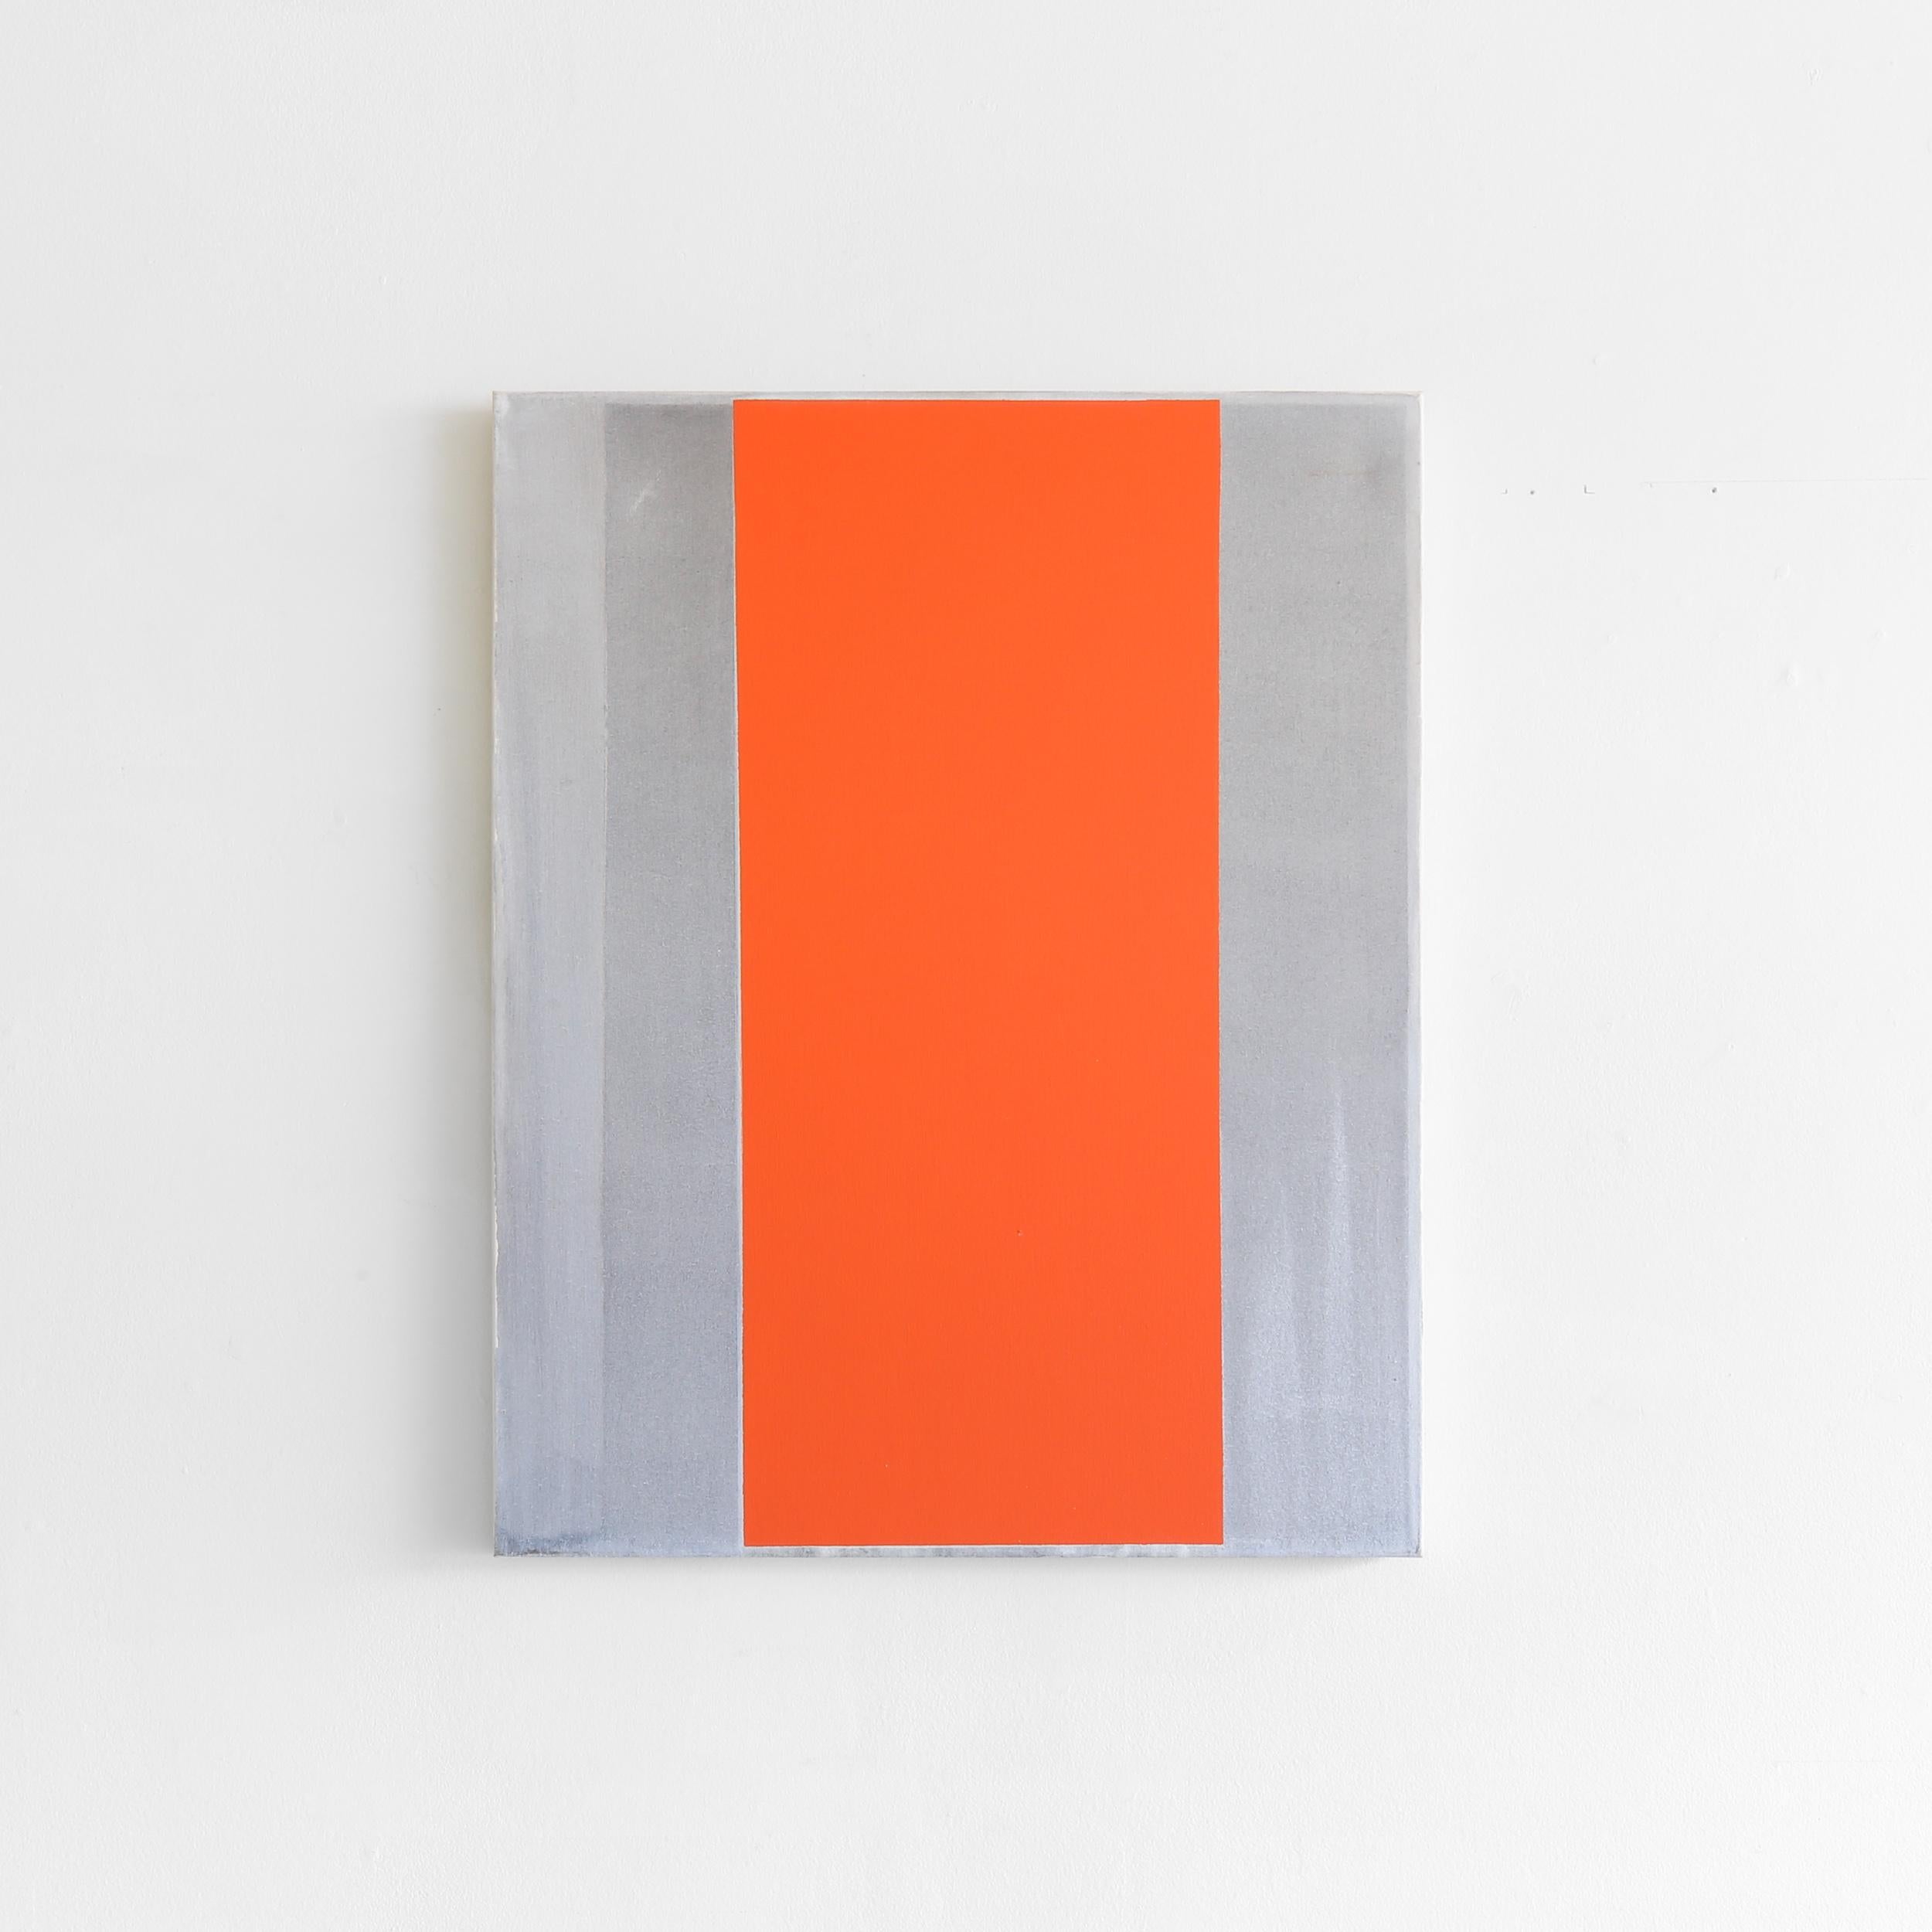 Still Alive for your Love des Künstlers Douglas Witmer ist ein graues und orangefarbenes, zeitgenössisches, minimalistisches, abstraktes Gemälde aus schwarzem Gesso und Acryl auf Leinwand mit den Maßen 30 x 22 und einem Preis von 3.500 $.

Douglas